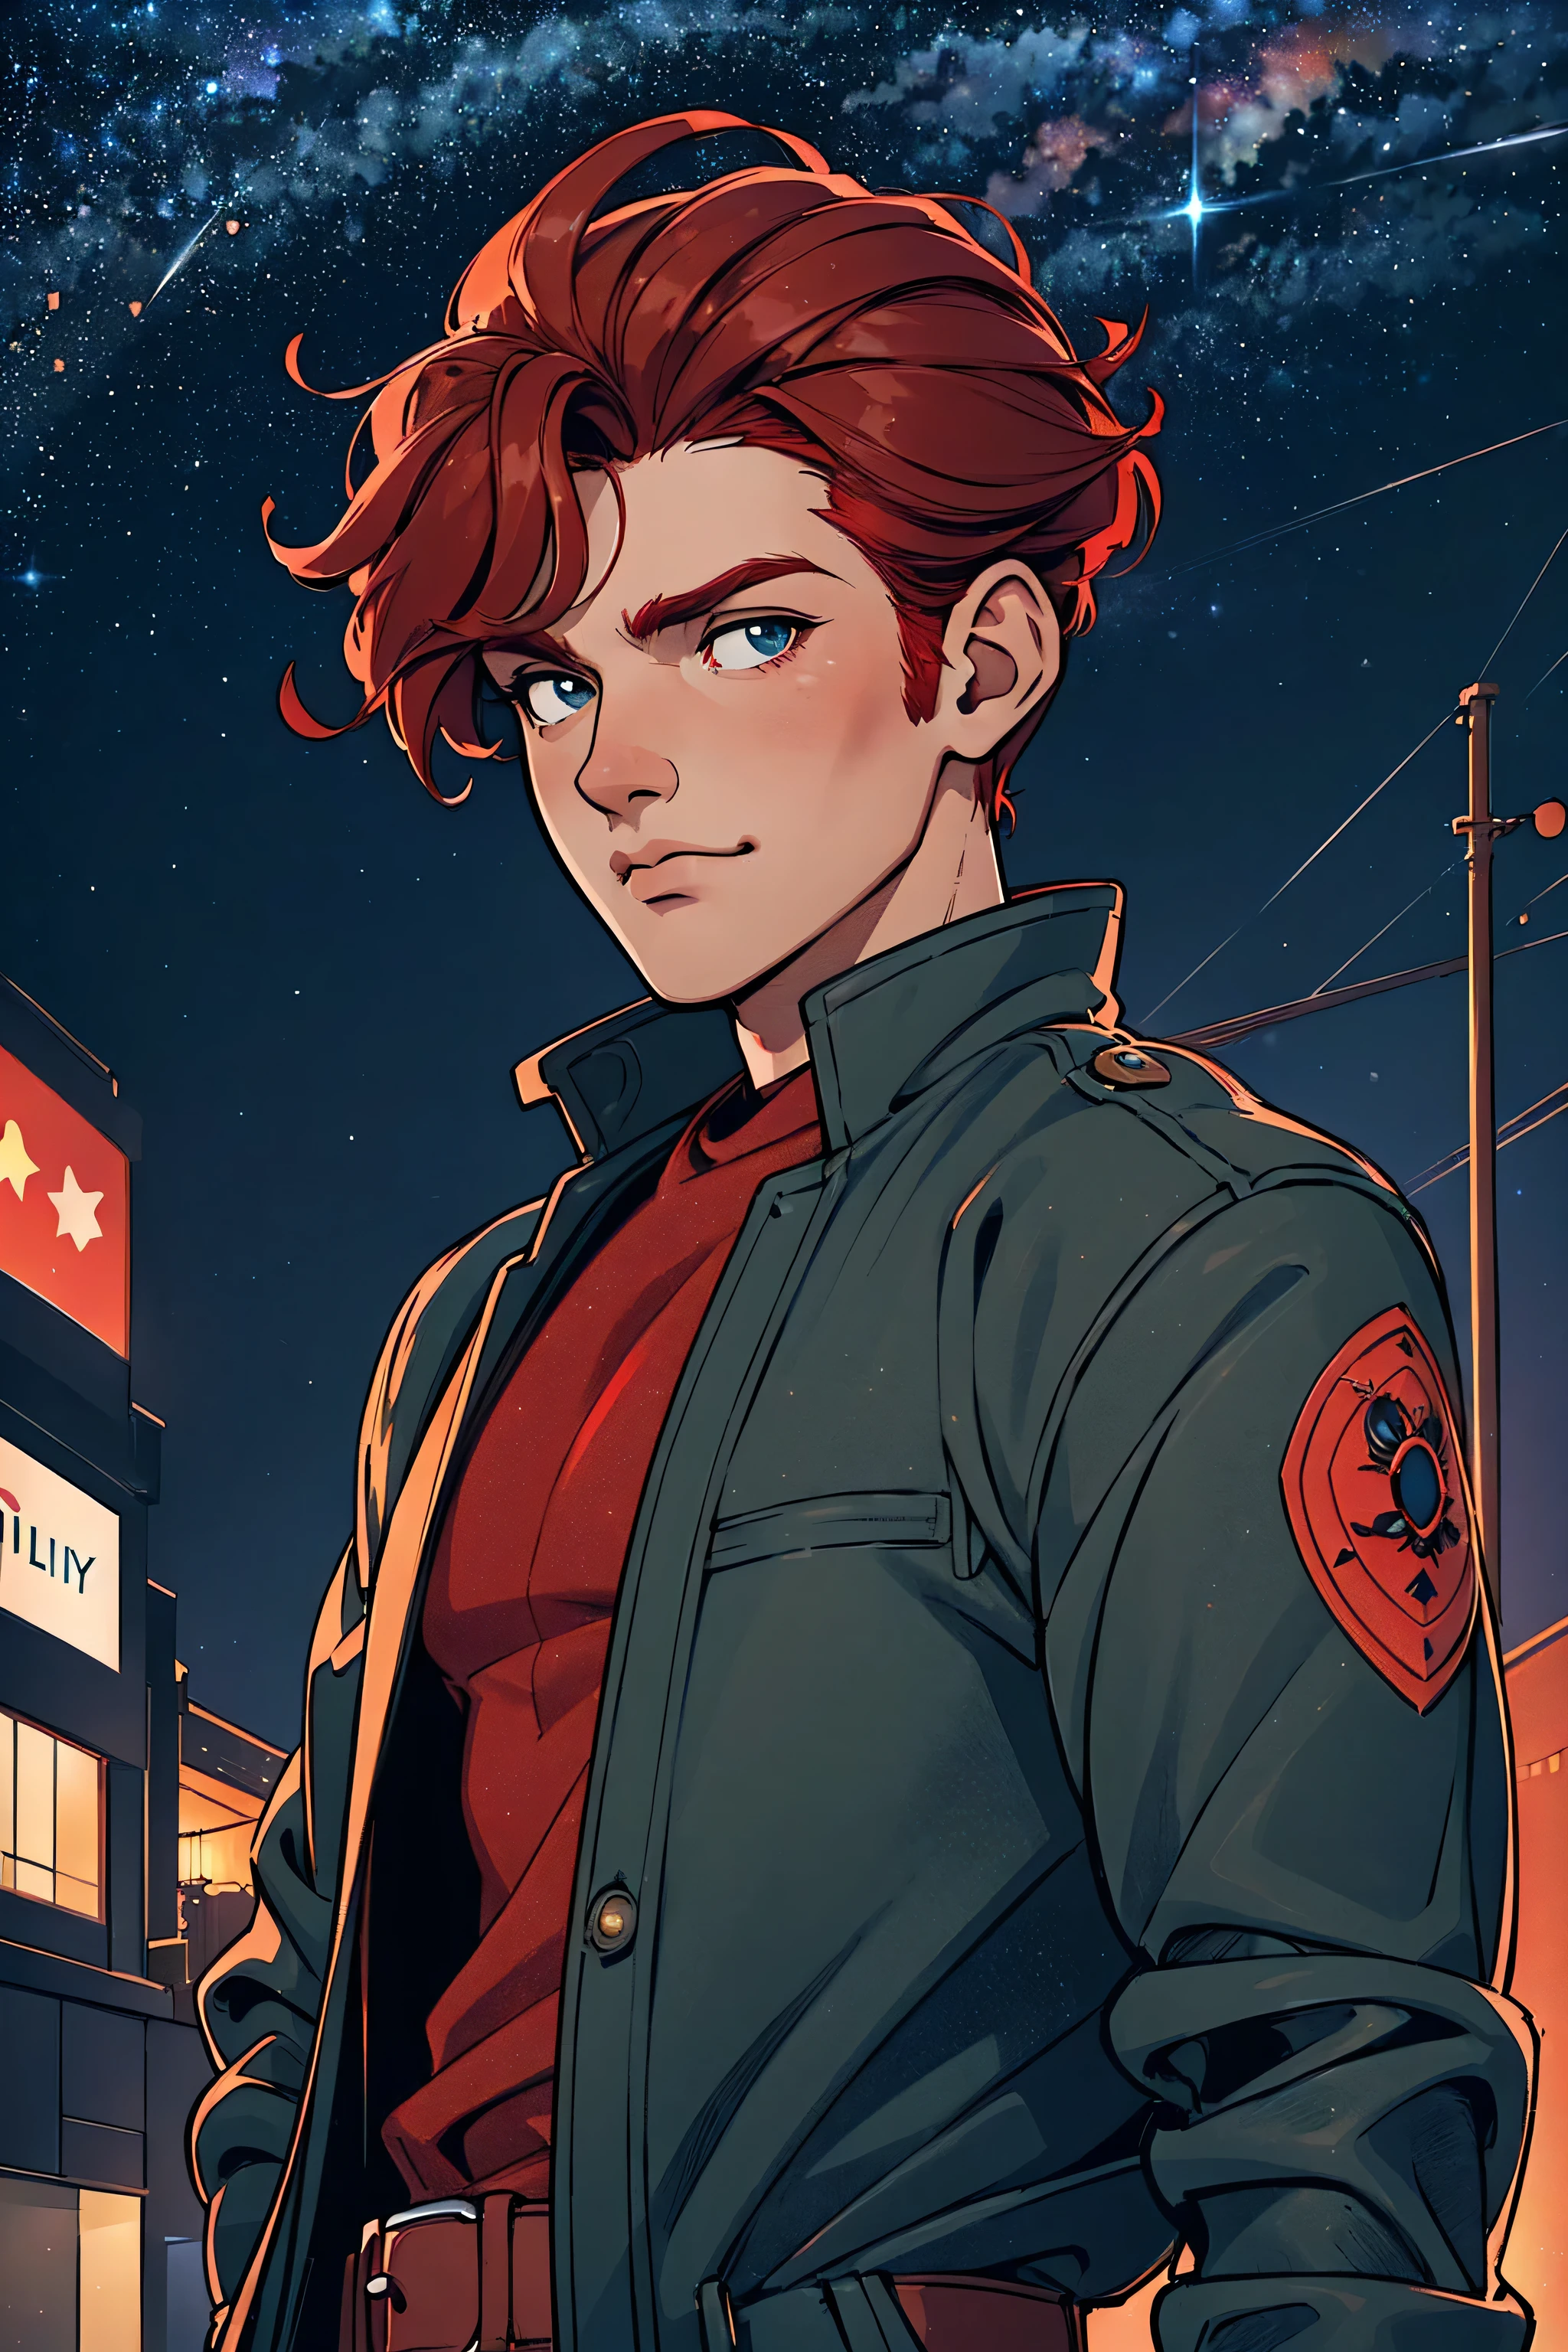 Ein Mann, Gutaussehend, robust, Rote Haare, Eine Jacke tragen, positioniert auf einer Stadtstraße bei Nacht, sanfte Stadtbeleuchtung, Sternenhimmel im Hintergrund, Cartoon-Kunststil, In einer natürlichen Pose, beste Qualität, Abonnieren